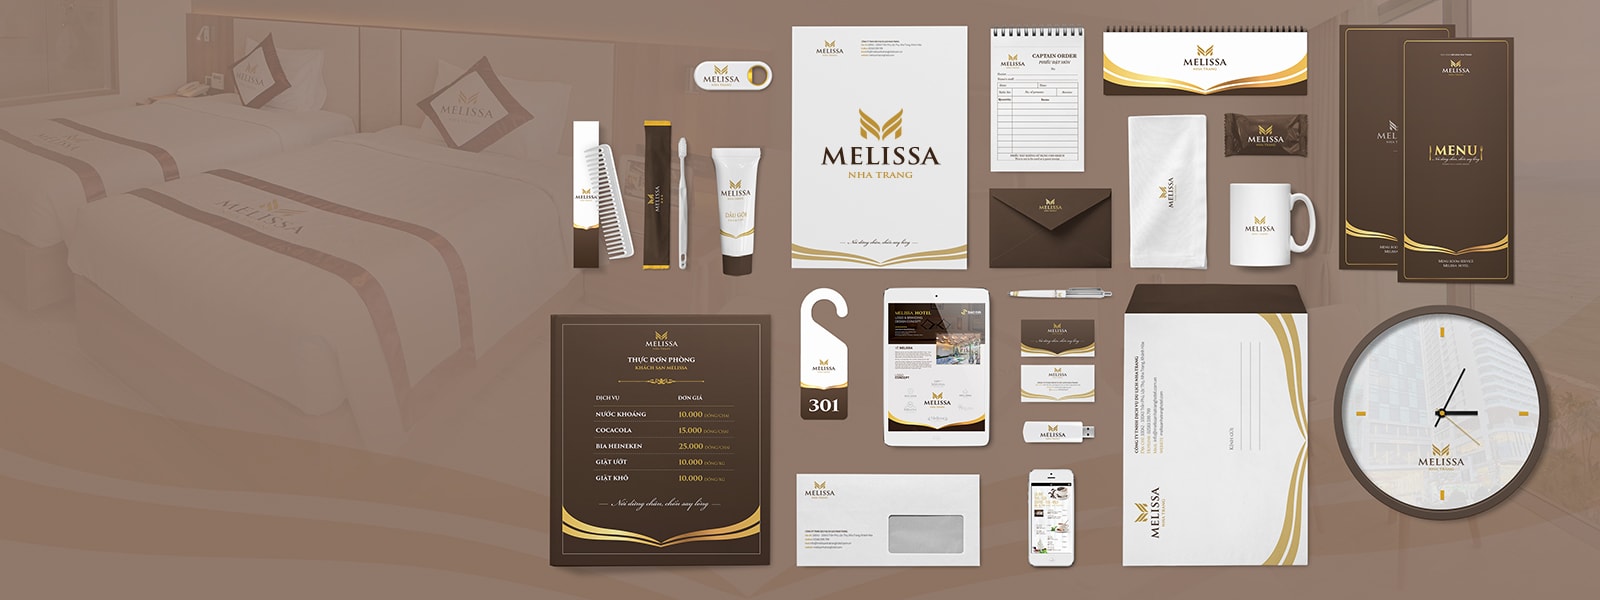 Thiết kế thương hiệu Melisa